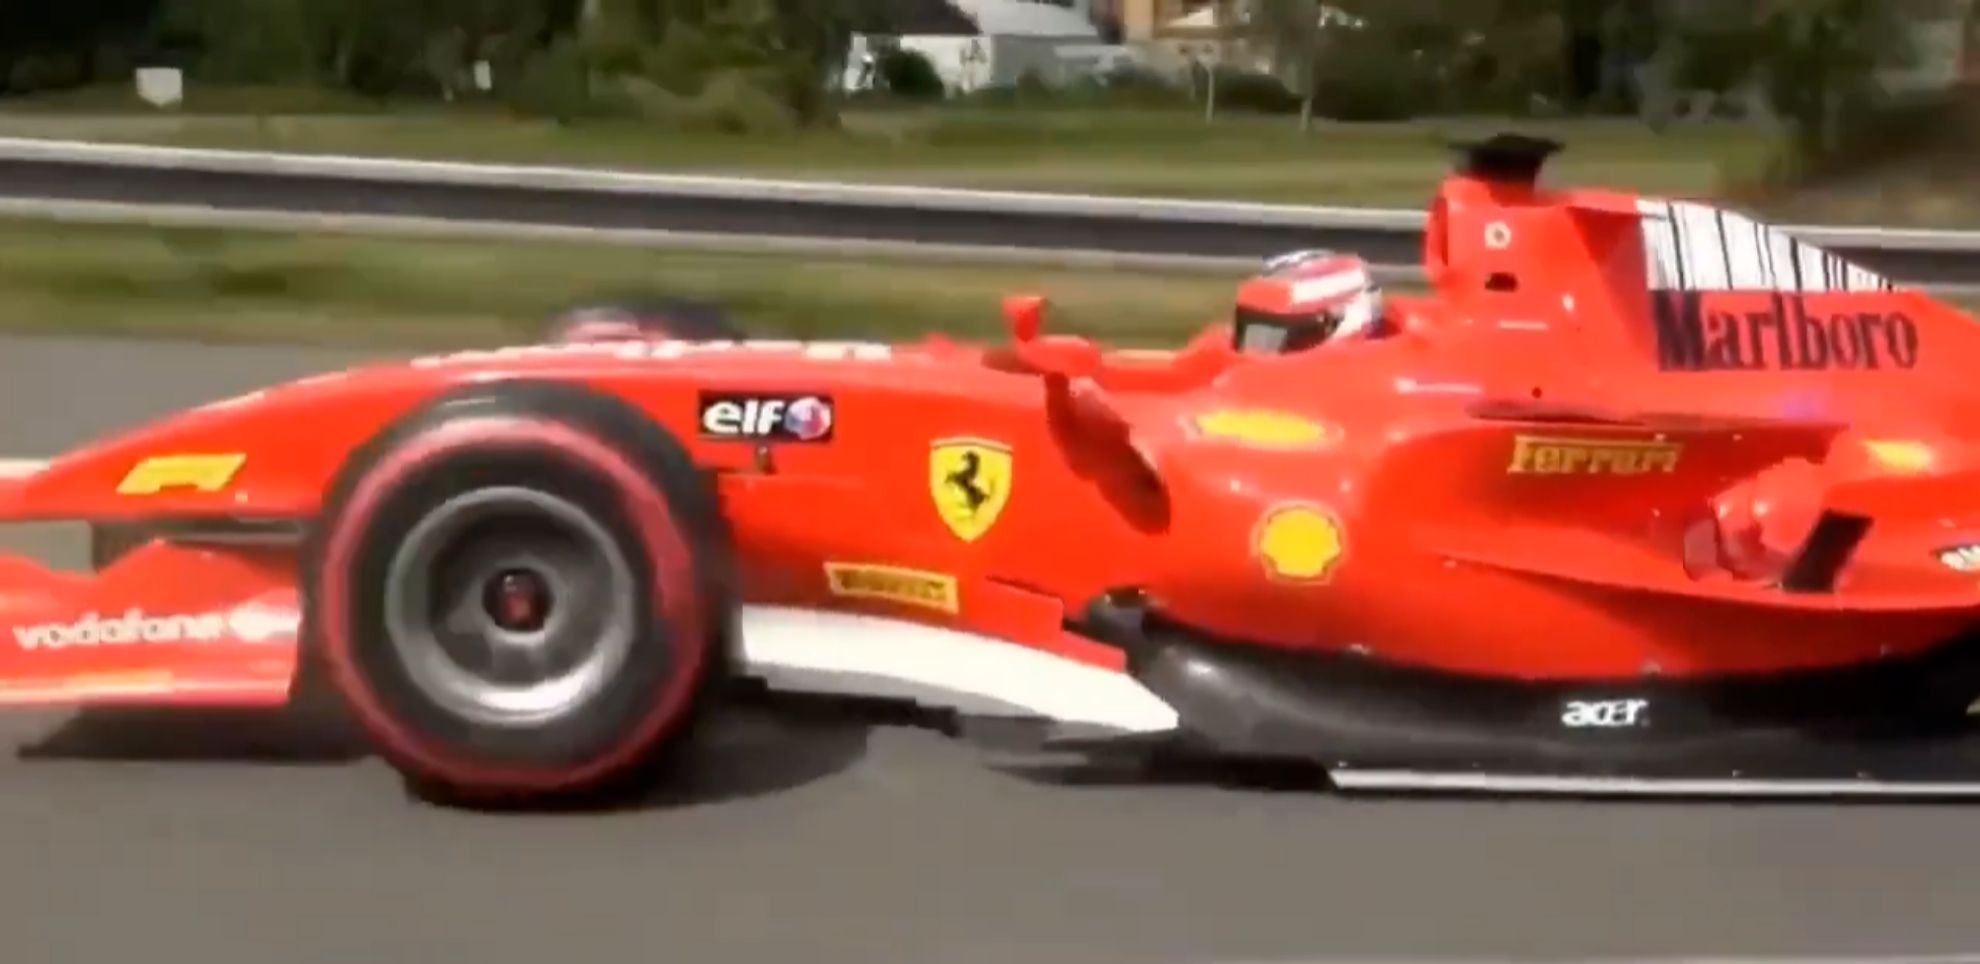 Formula 1 en la carretera - GP2 - Republica Checa - autopista D4 - video viral